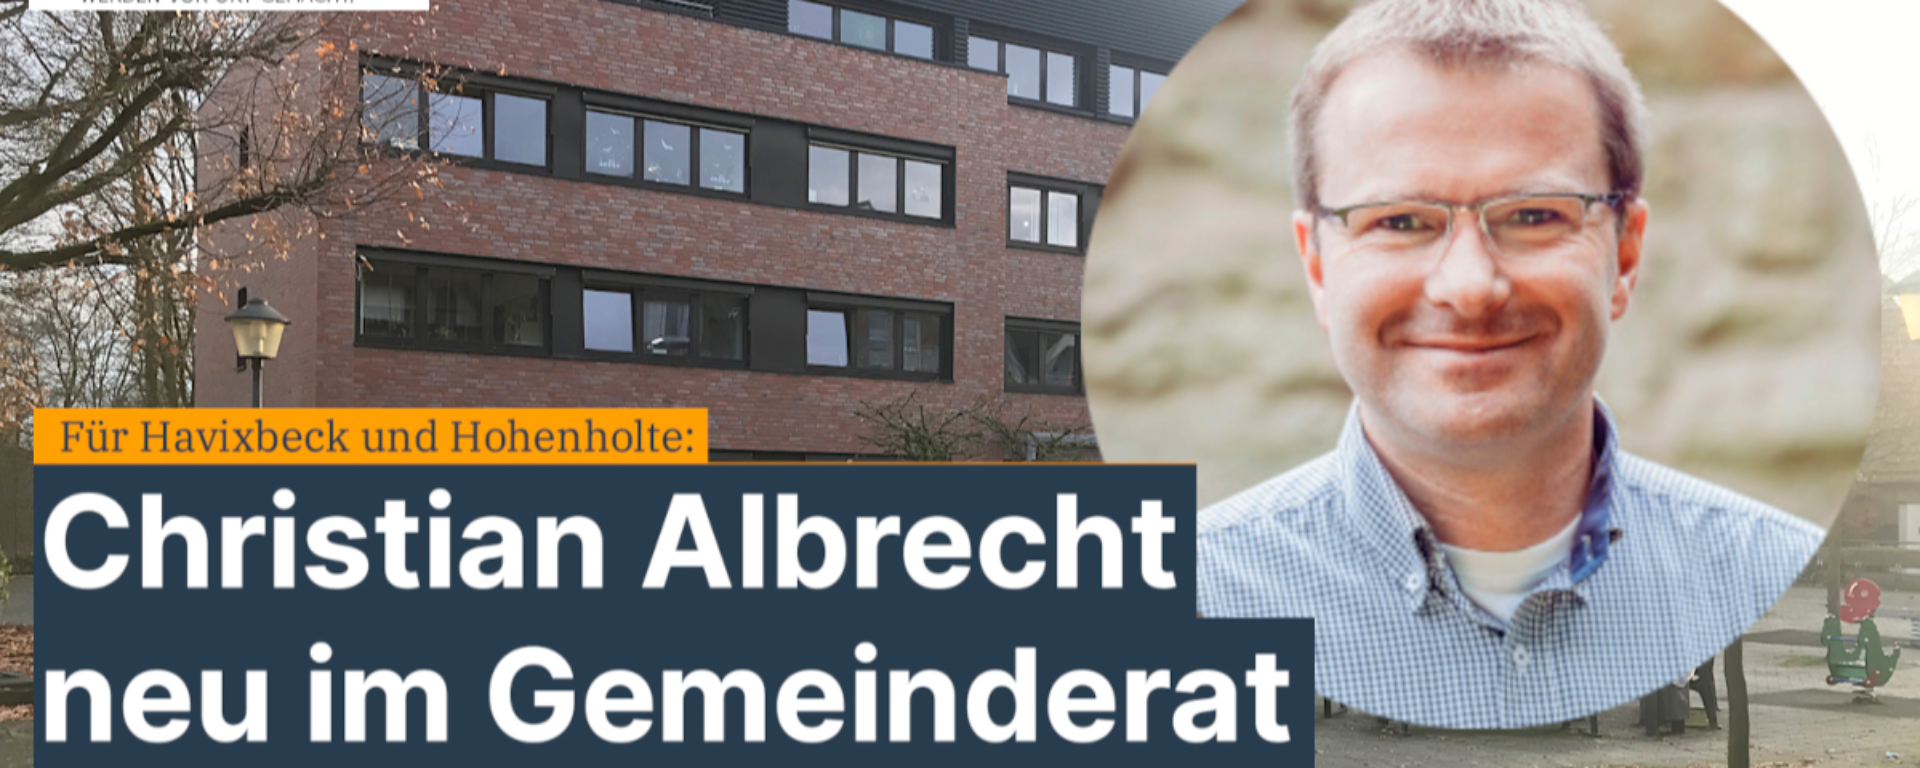 Christian Albrecht neu im Rat